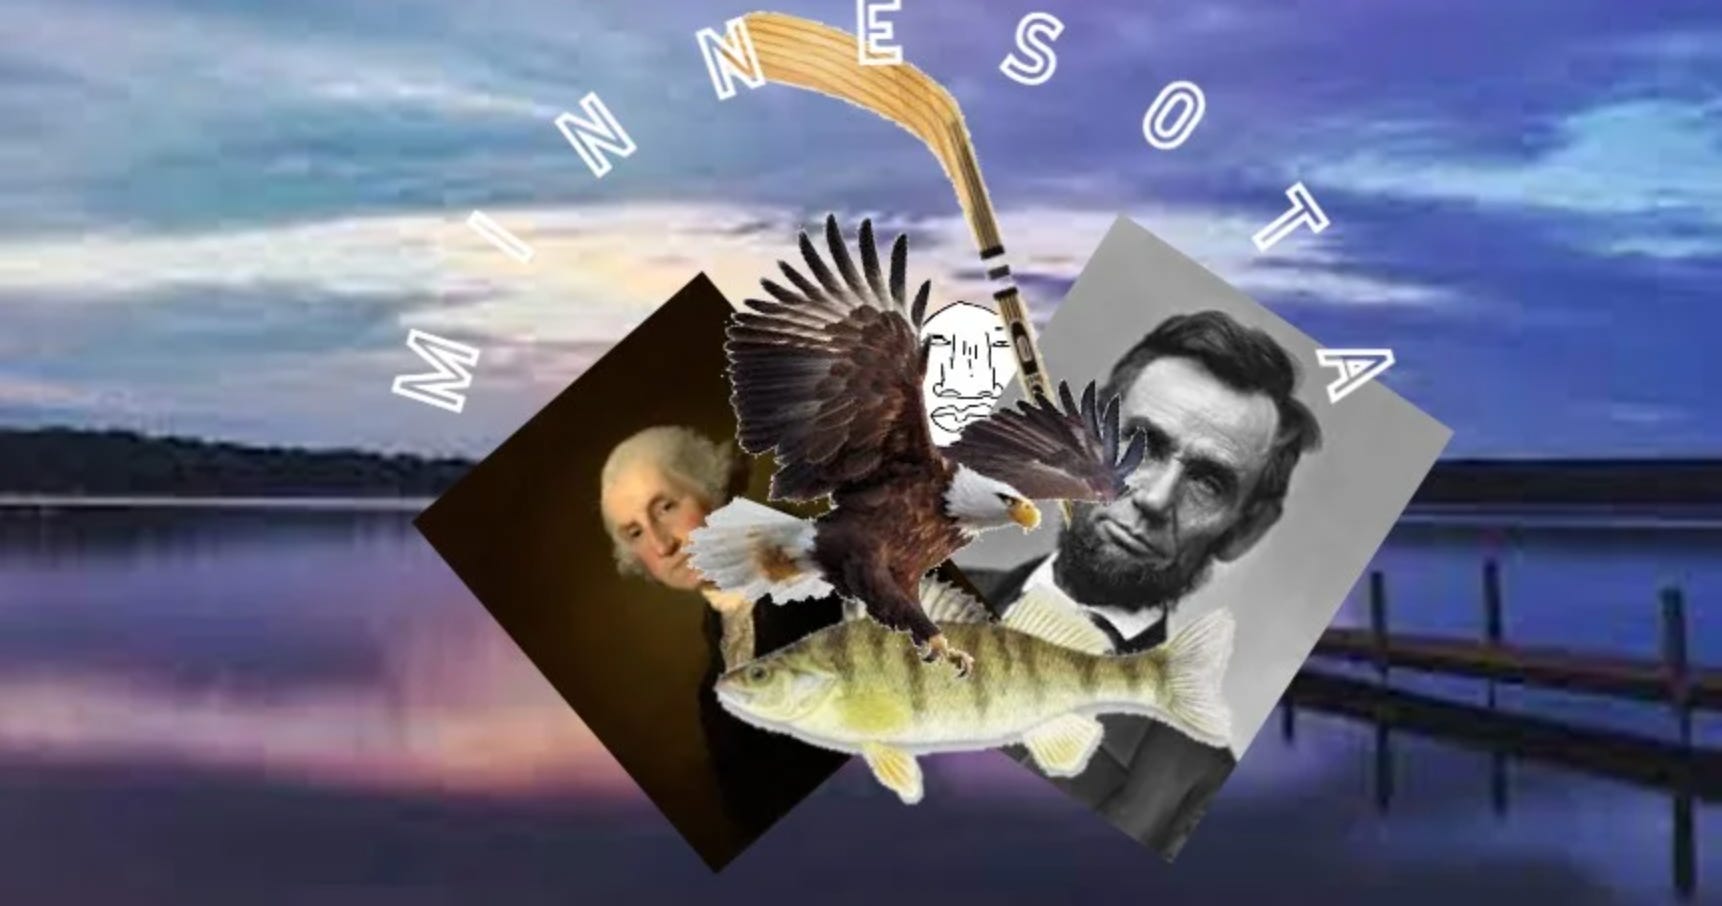 Dieser Beitrag zeigt George Washington und Abraham Lincoln sowie einen Weißkopfseeadler und einen Hockeyschläger.